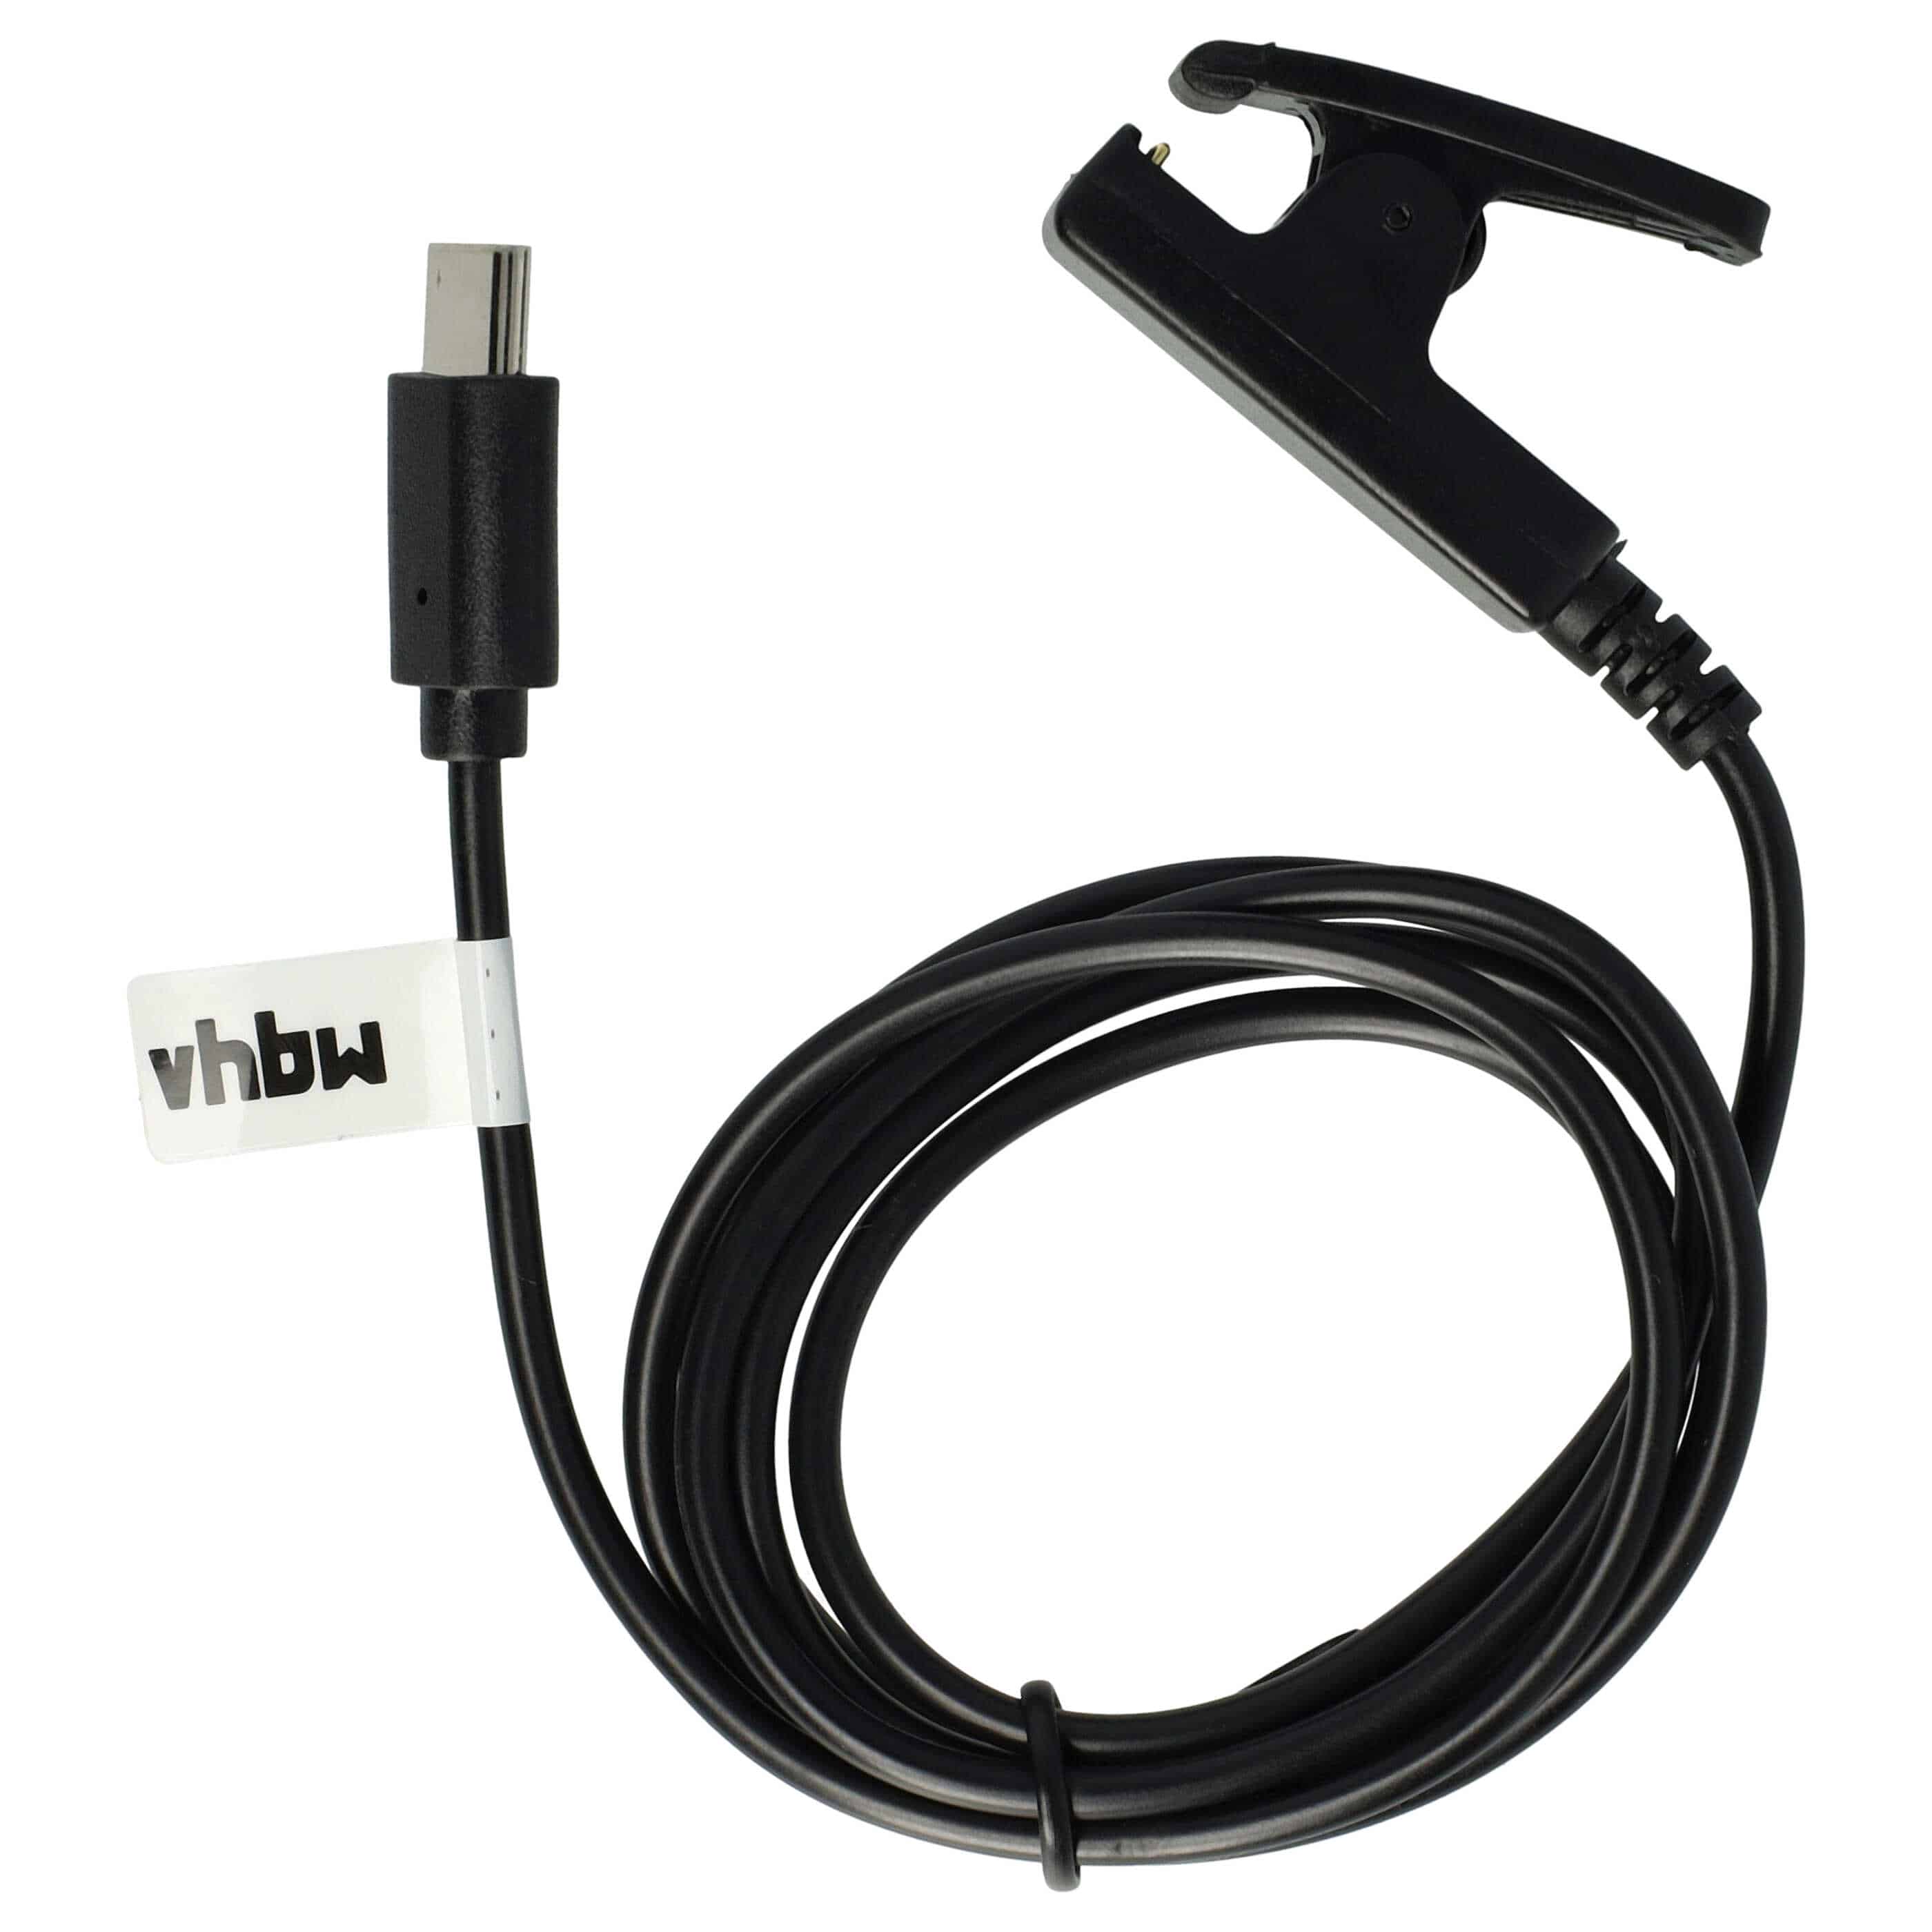 Cable de carga USB reemplaza Garmin 010-13289-00 para smartwatch Garmin - negro 100 cm